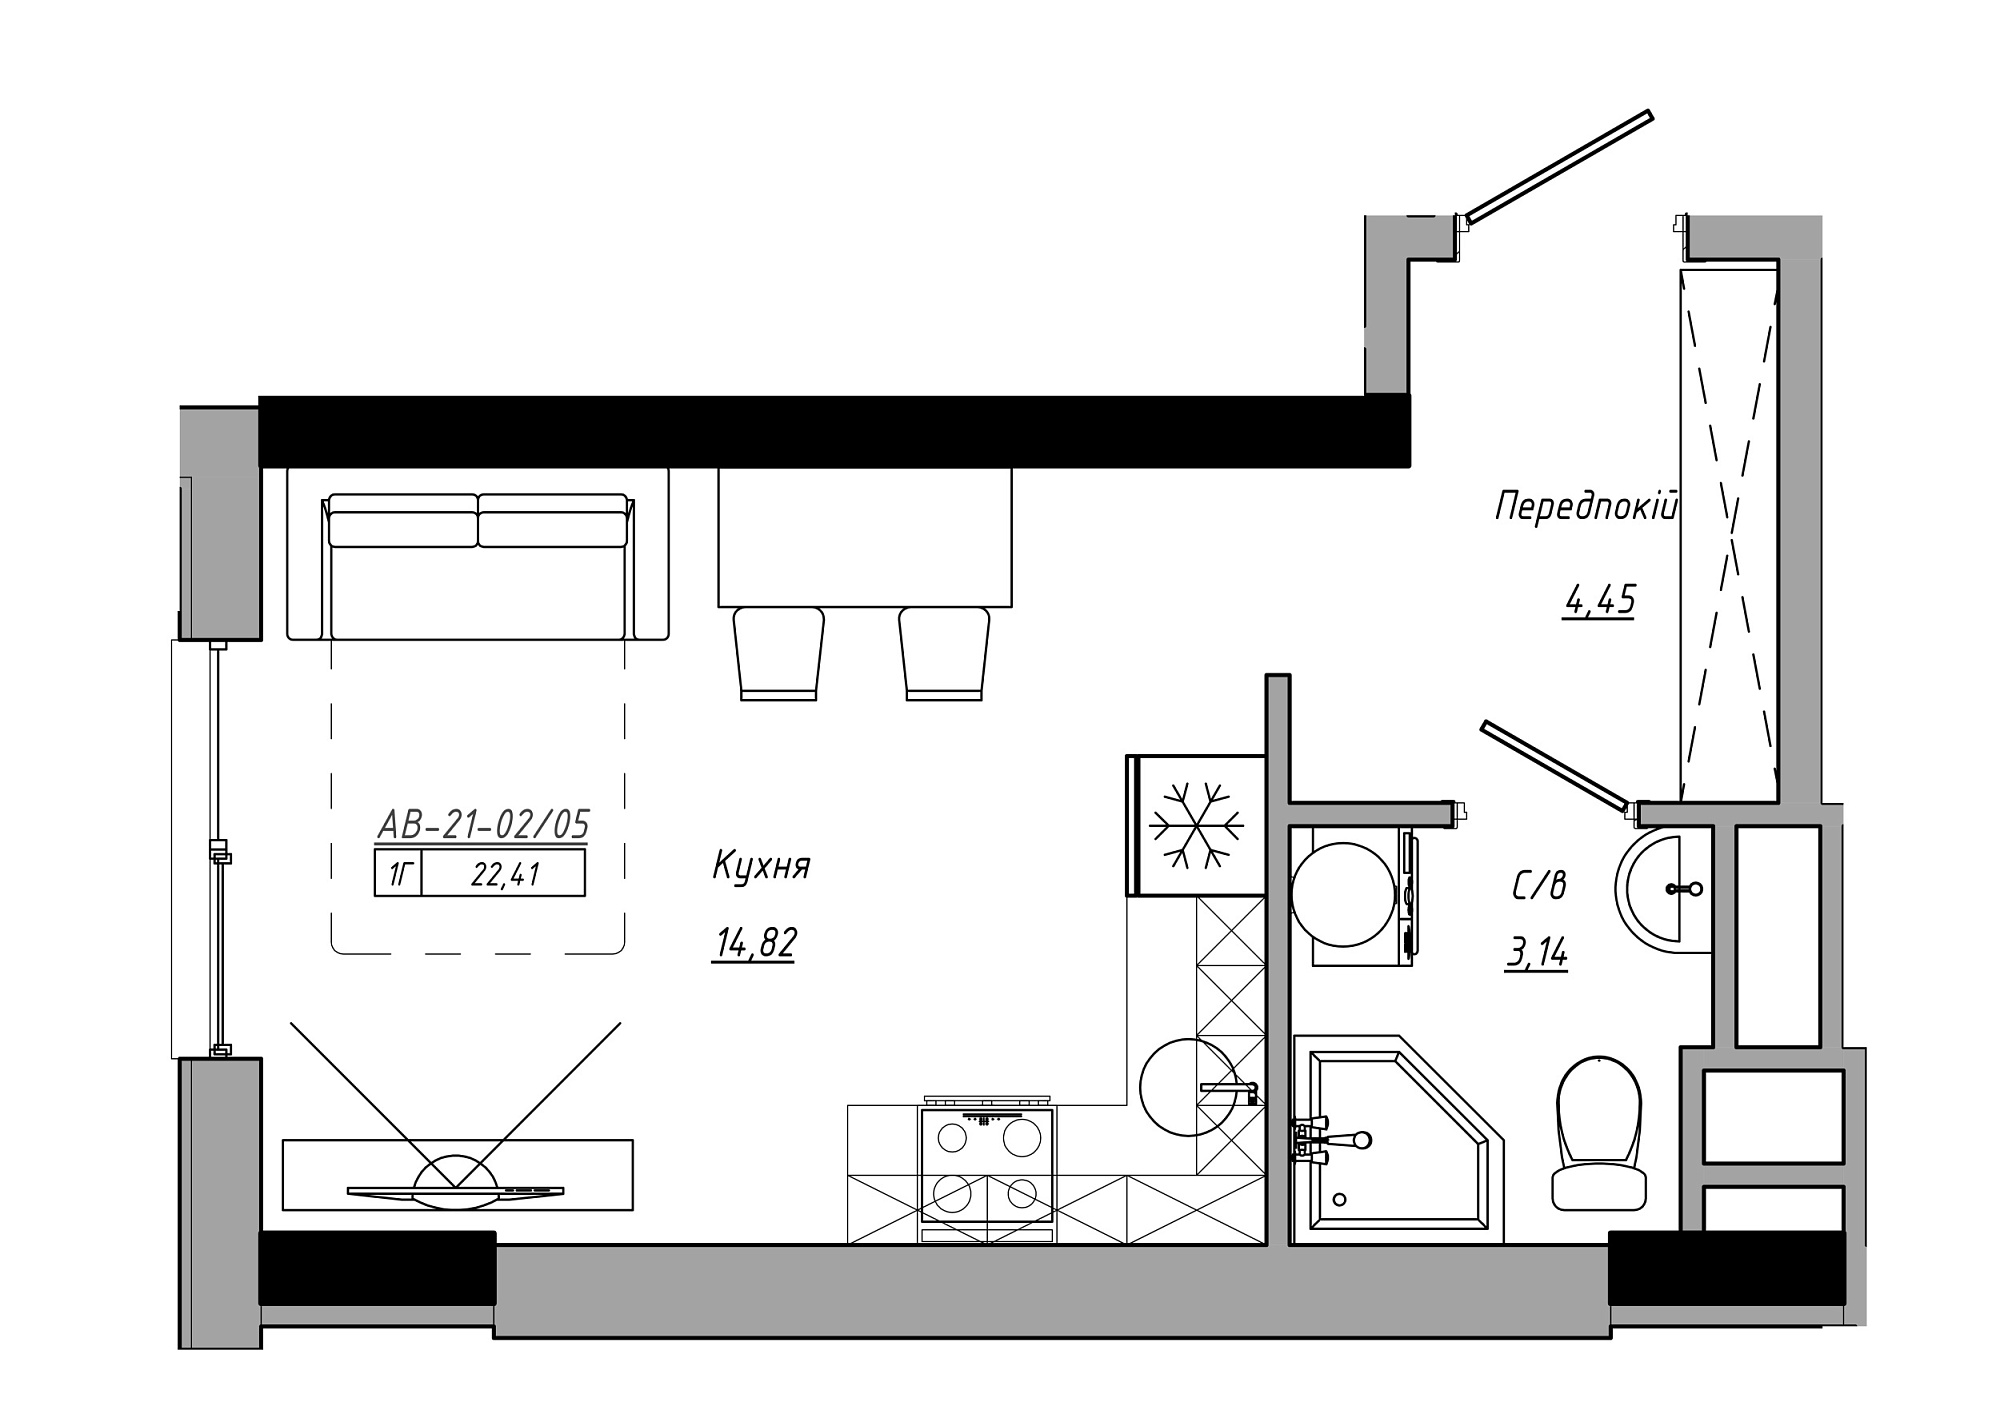 Планування Smart-квартира площею 22.41м2, AB-21-02/00005.